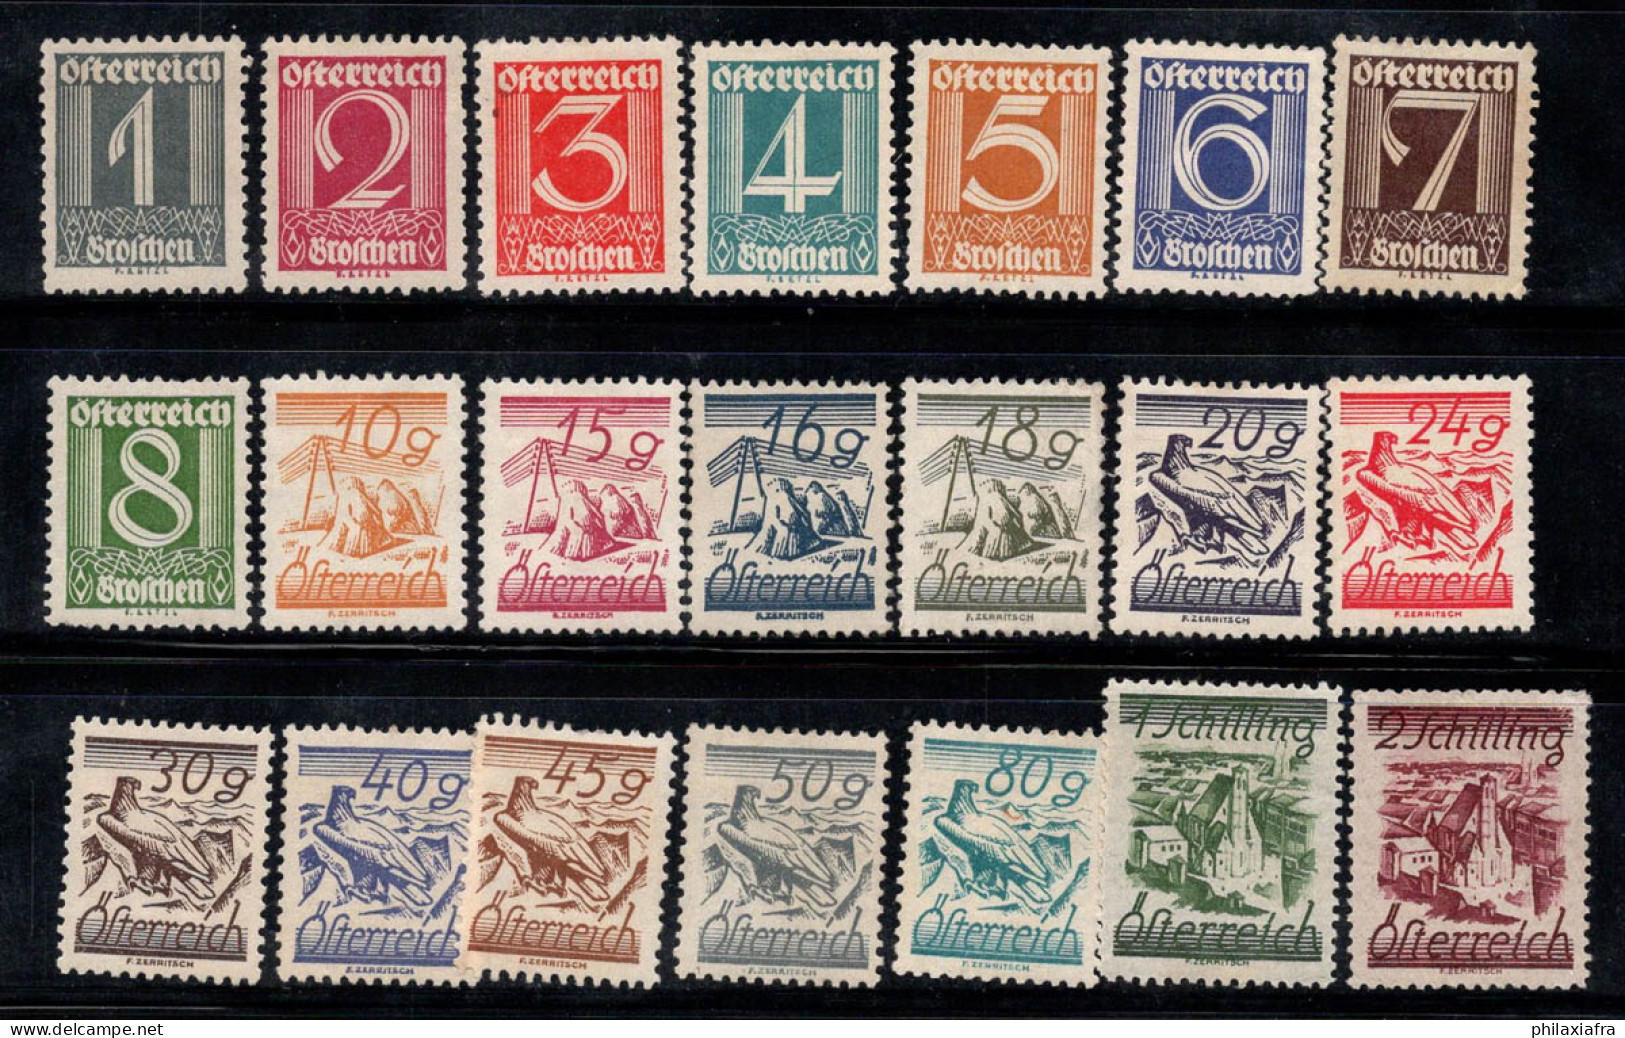 Autriche 1925 Mi. 447-467 Neuf * MH 60% Nombres, Paysages, Aigle - Nuovi